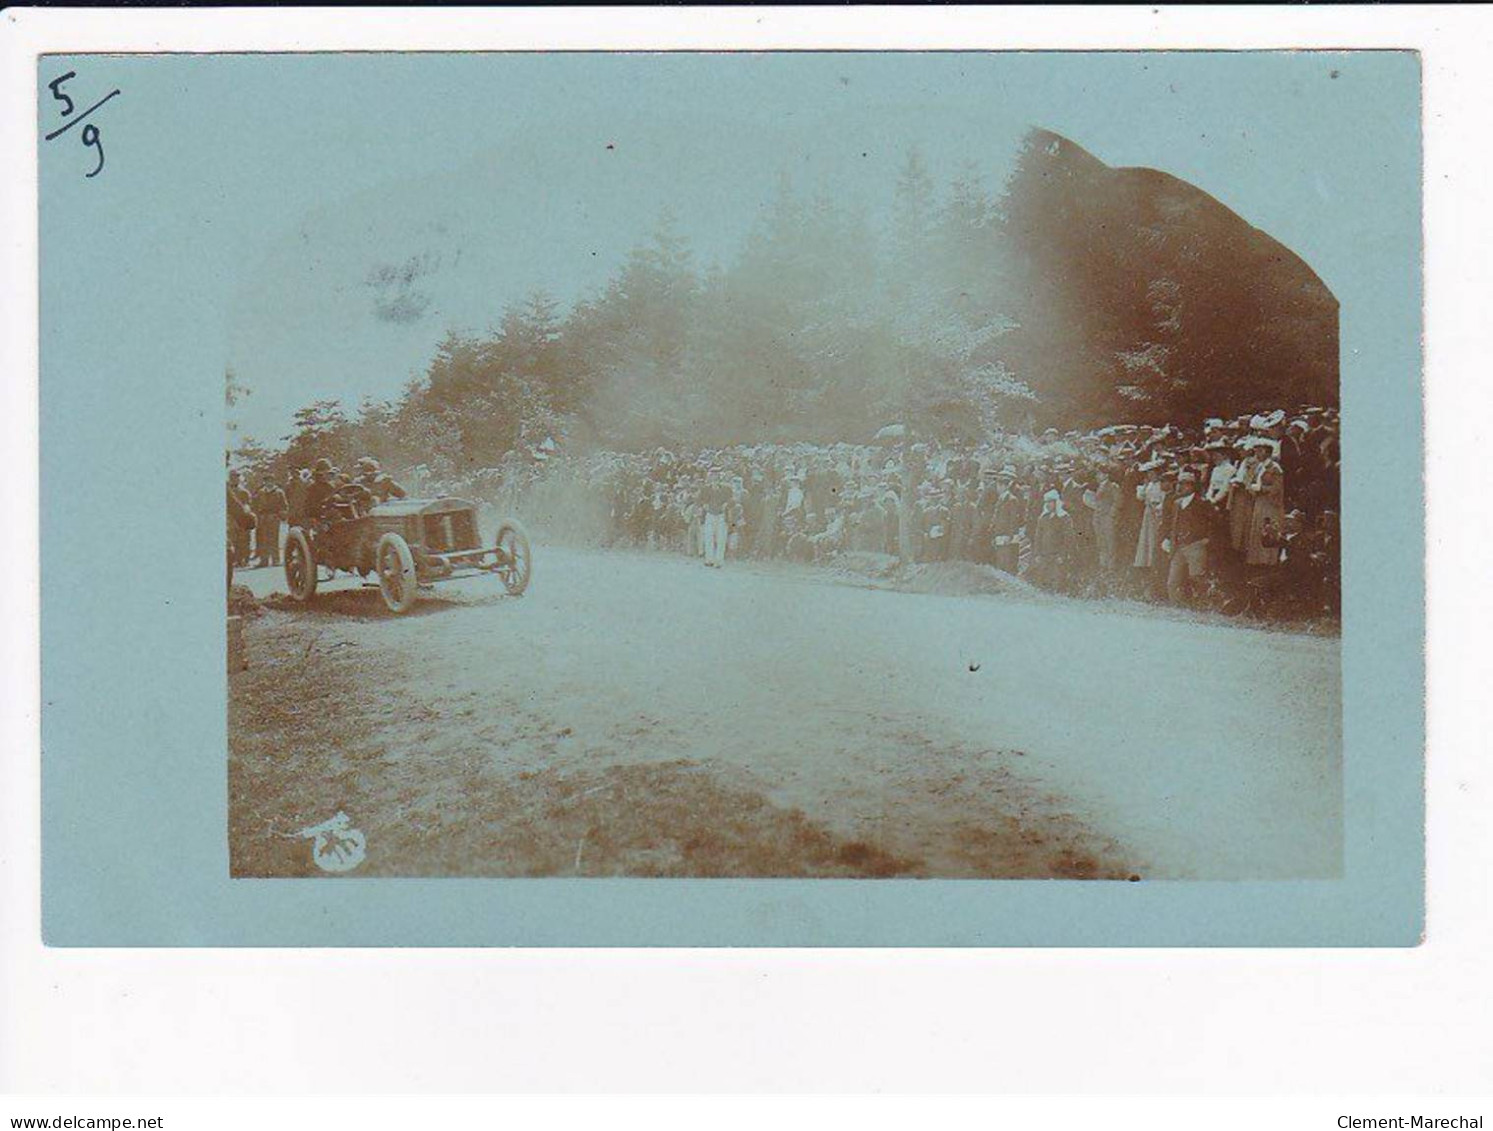 Coupe GORDON BENNET 1905 : lot de 5 cartes photos dans les pages d'album d'origine (course automobile) - très bon état